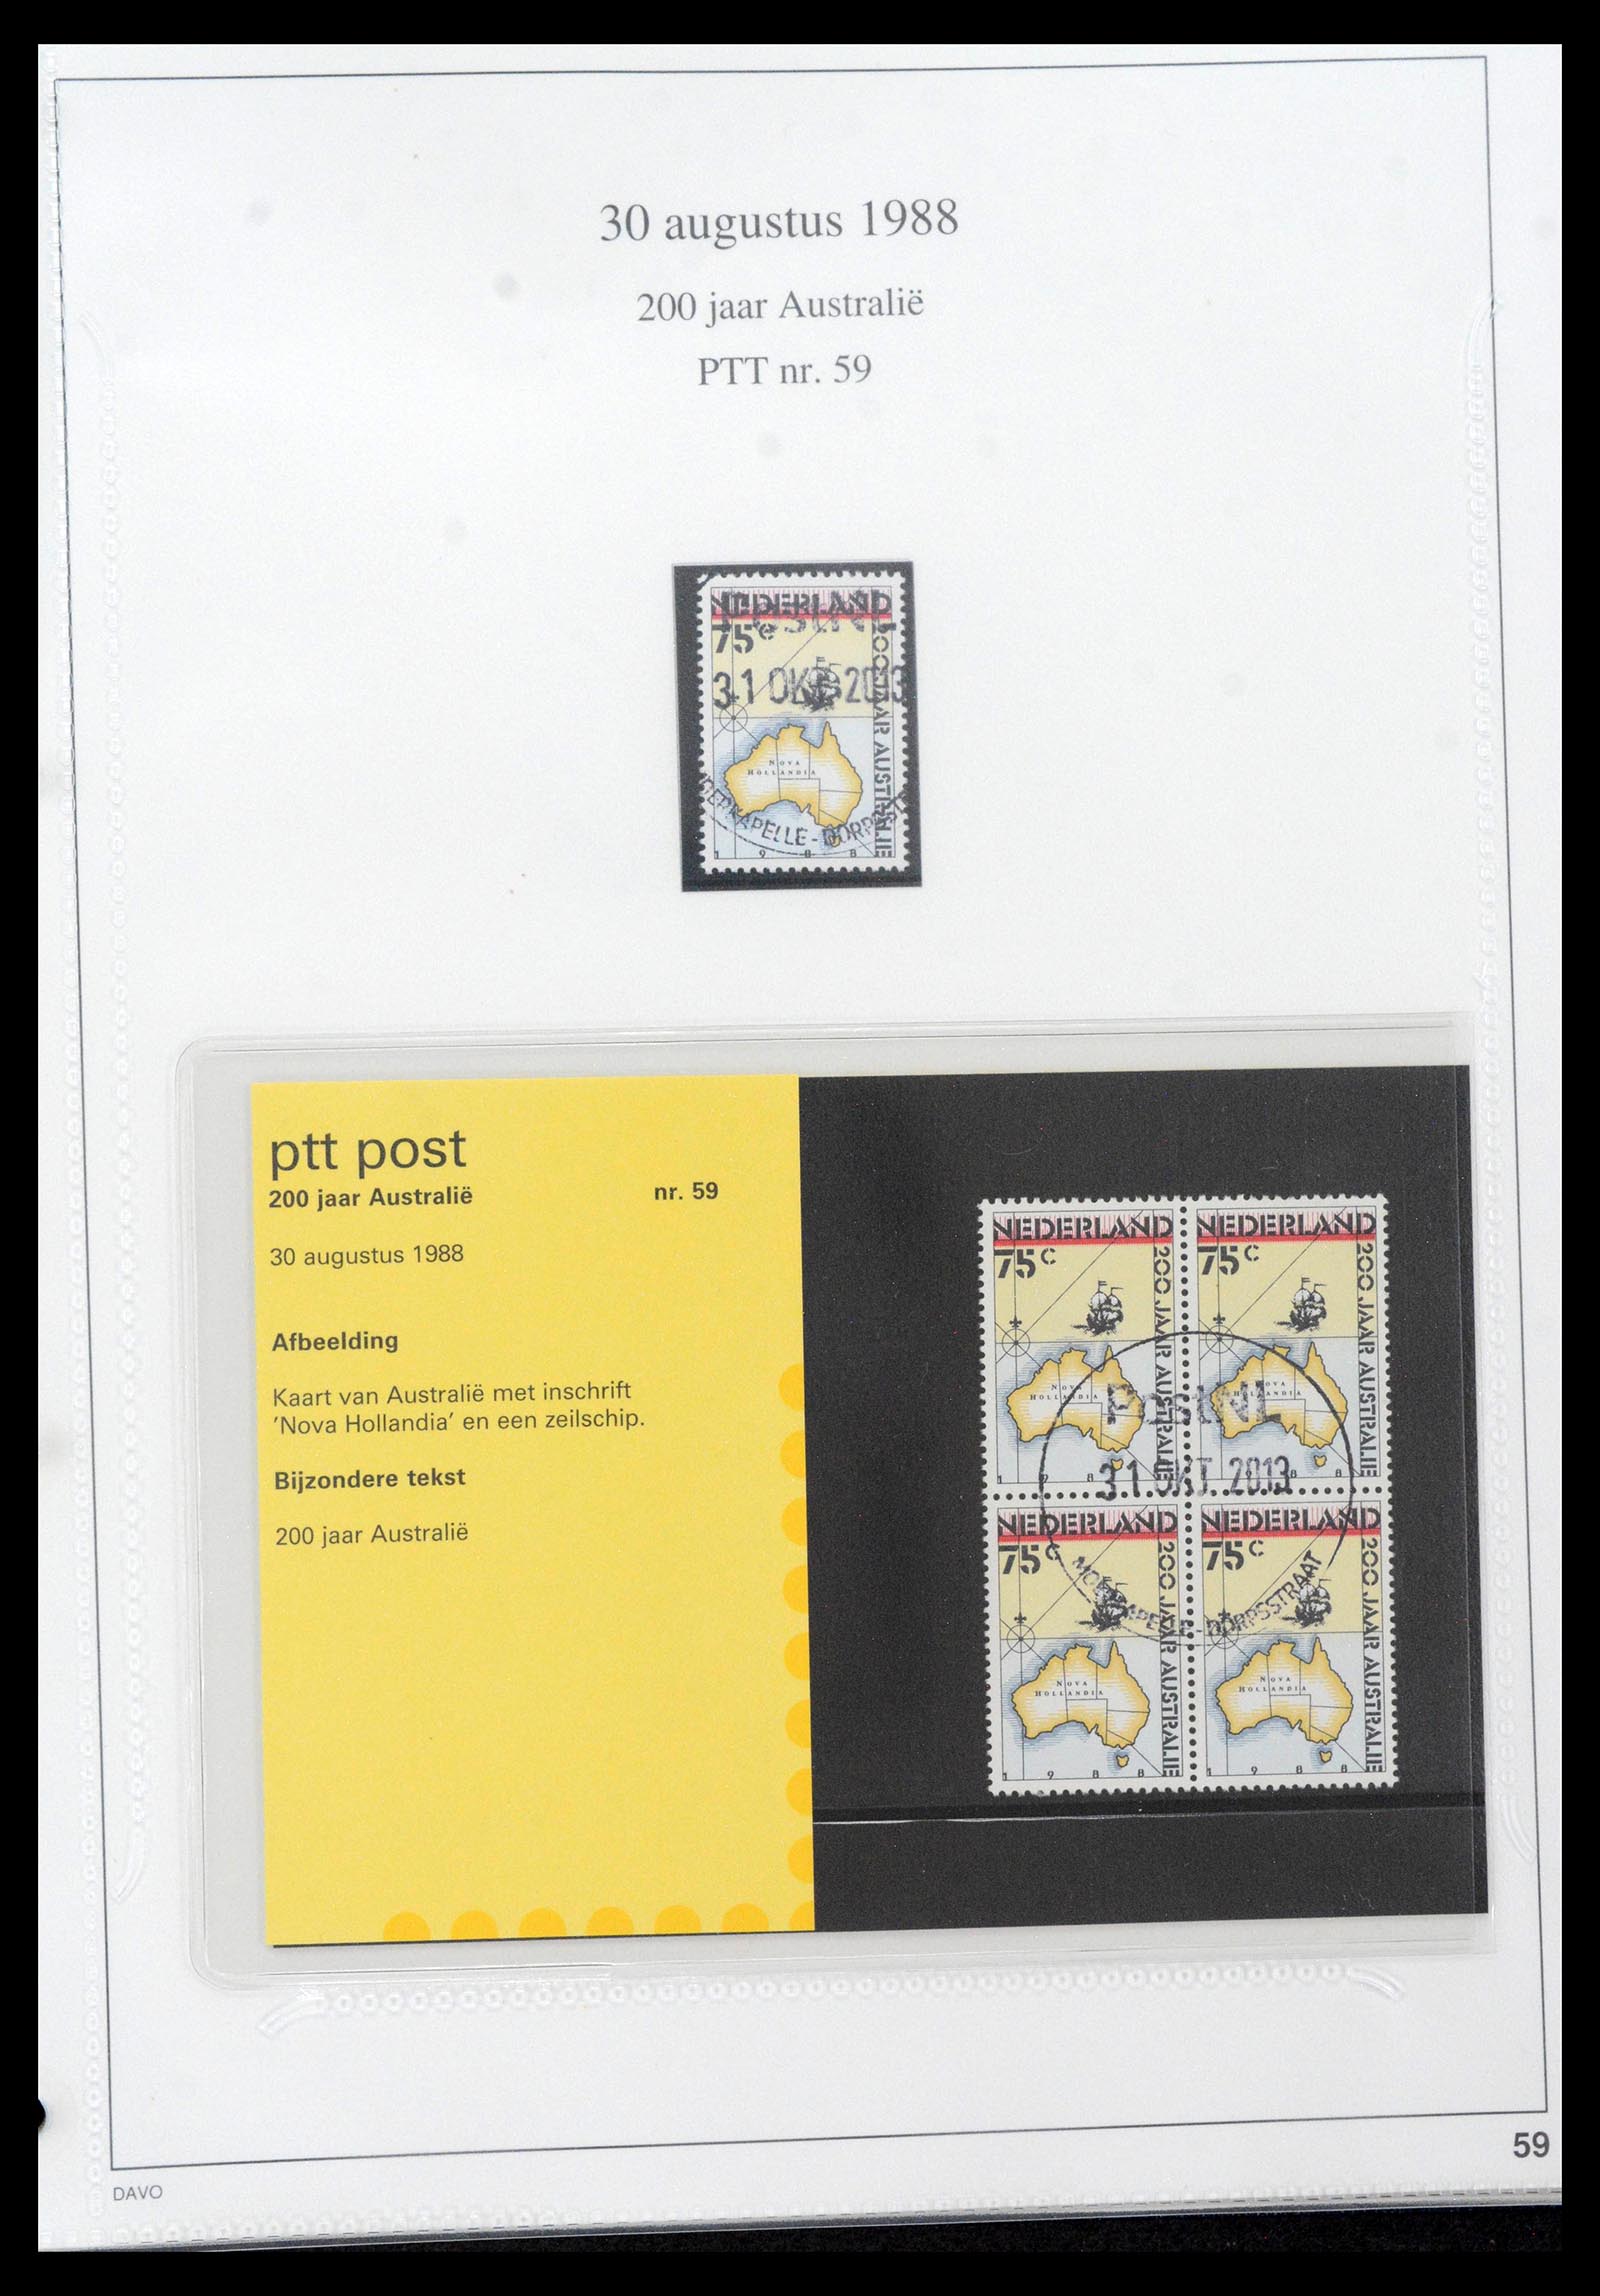 39121 0059 - Stamp collection 39121 Netherlands presentationpacks 1982-2001.